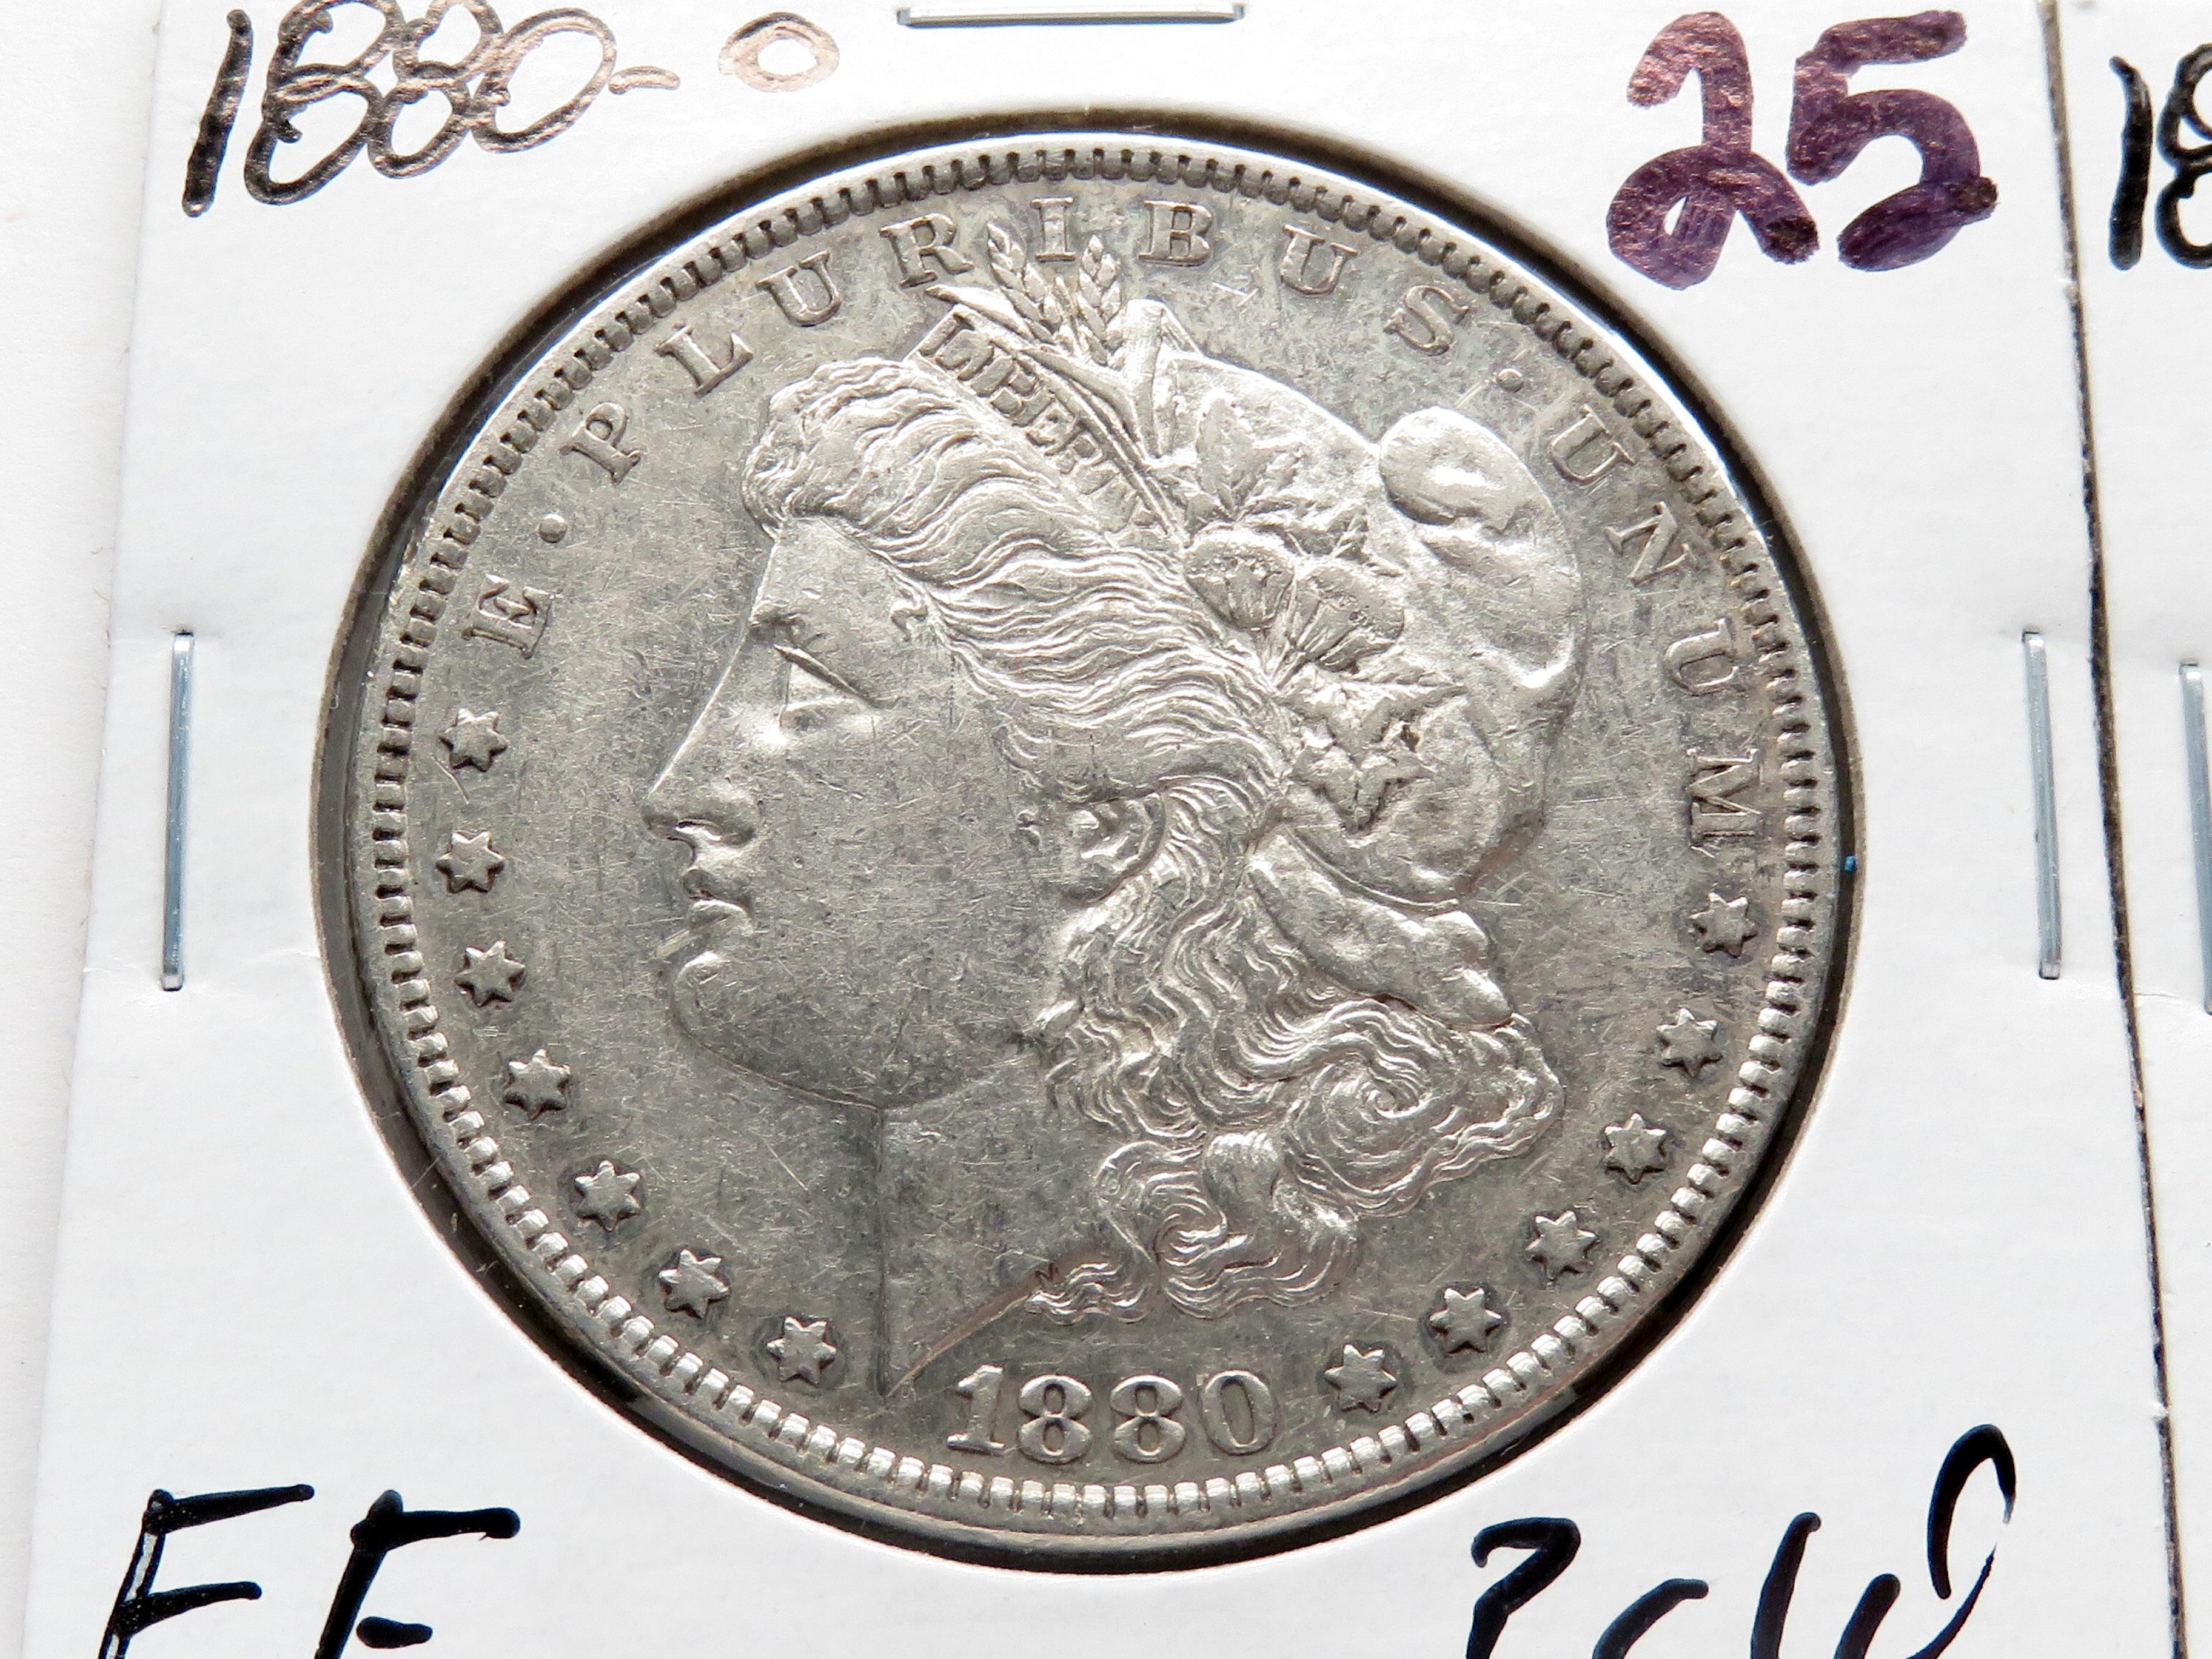 2 Morgan $: 1880-O EF ?clea, 1880S VF clea